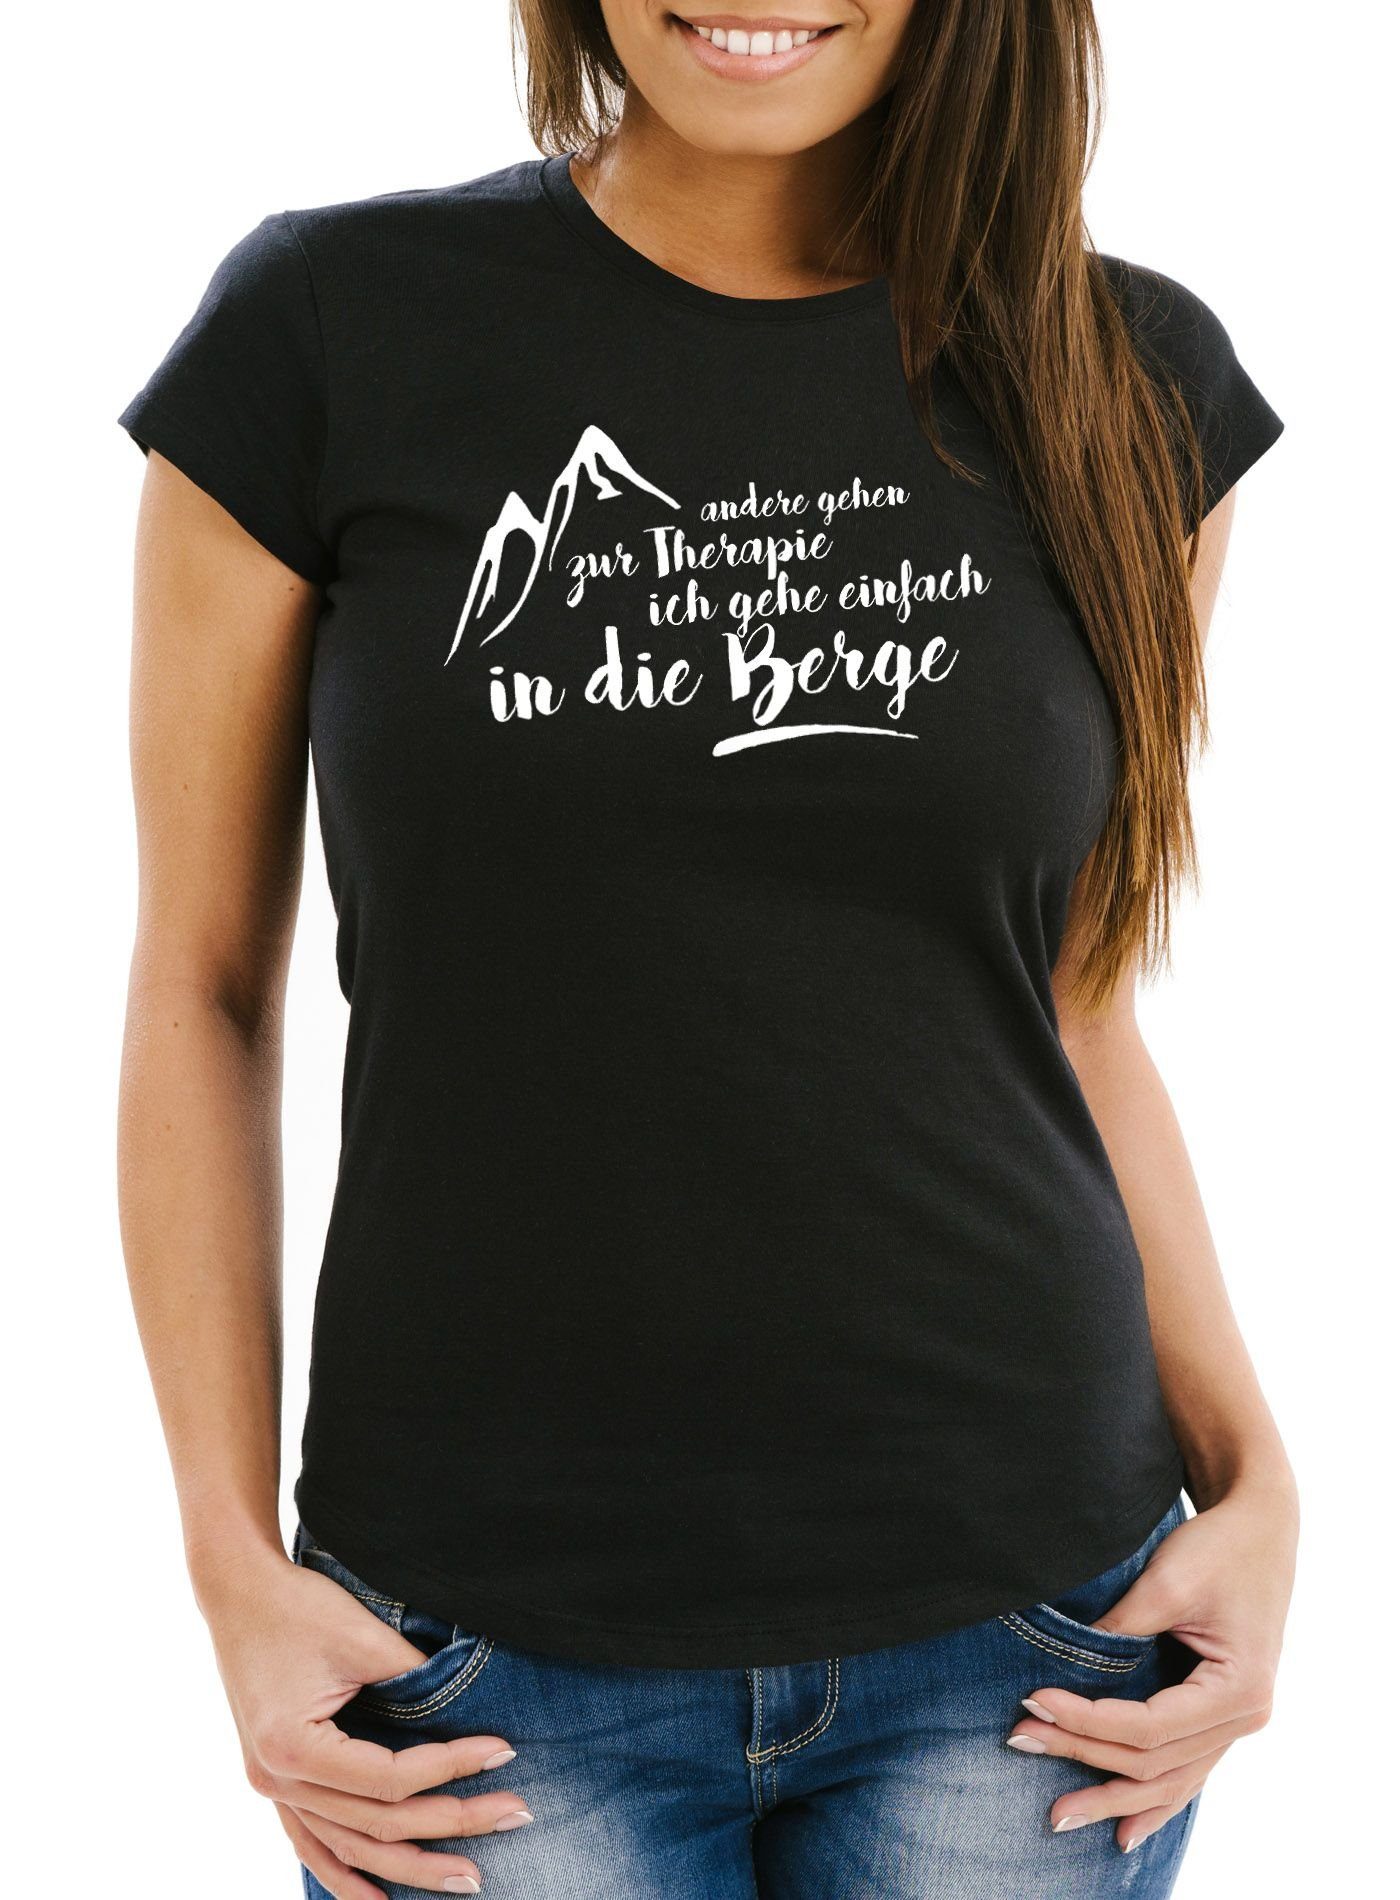 MoonWorks Print-Shirt Damen T-Shirt Wandern andere gehen zur Therapie, ich gehe einfach in die Berge Slim Fit Moonworks® mit Print schwarz